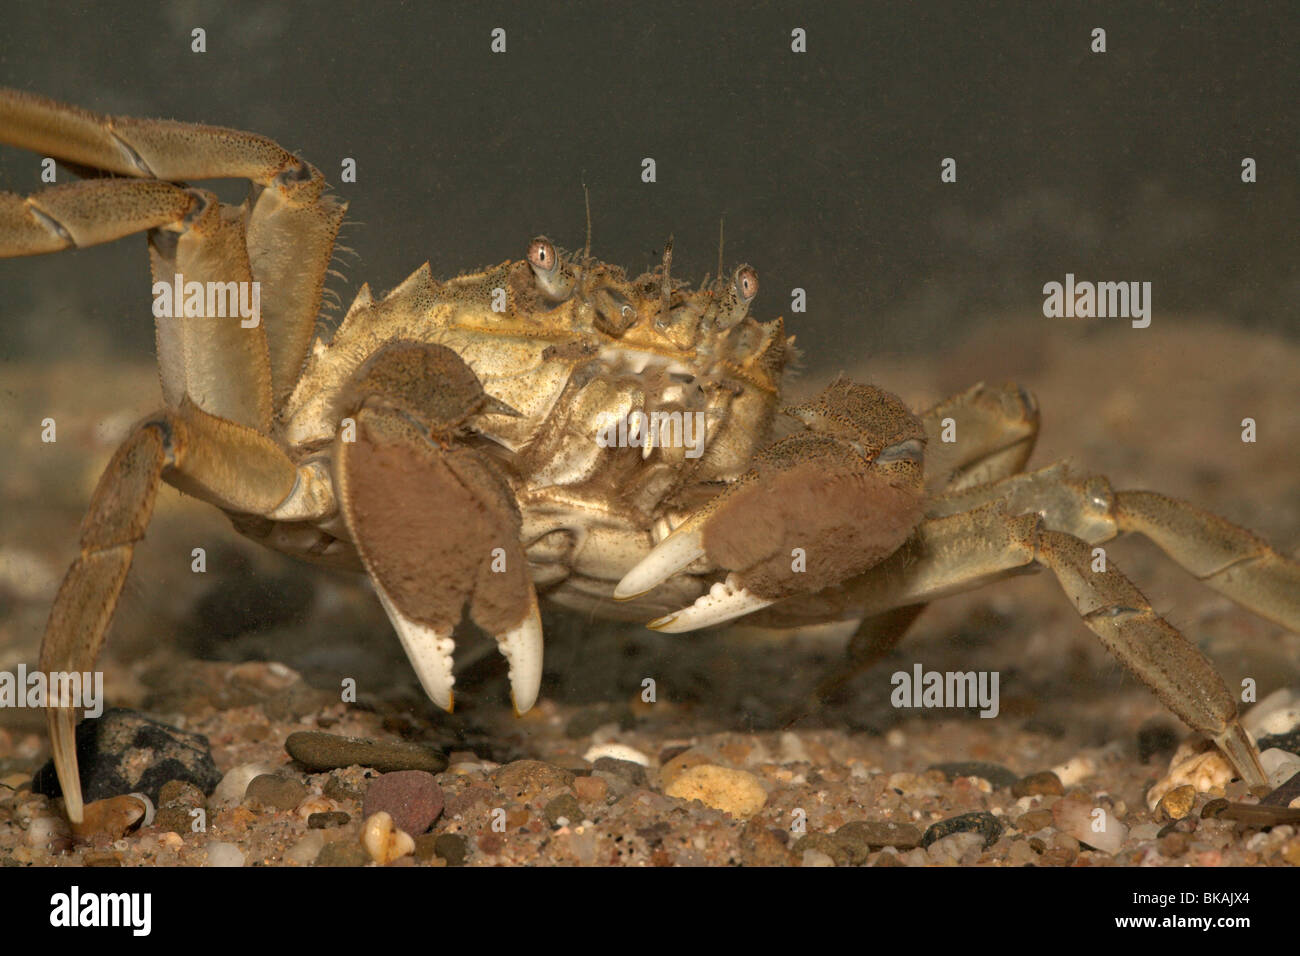 Un crabe chinois alluviale marche sur les Banque D'Images